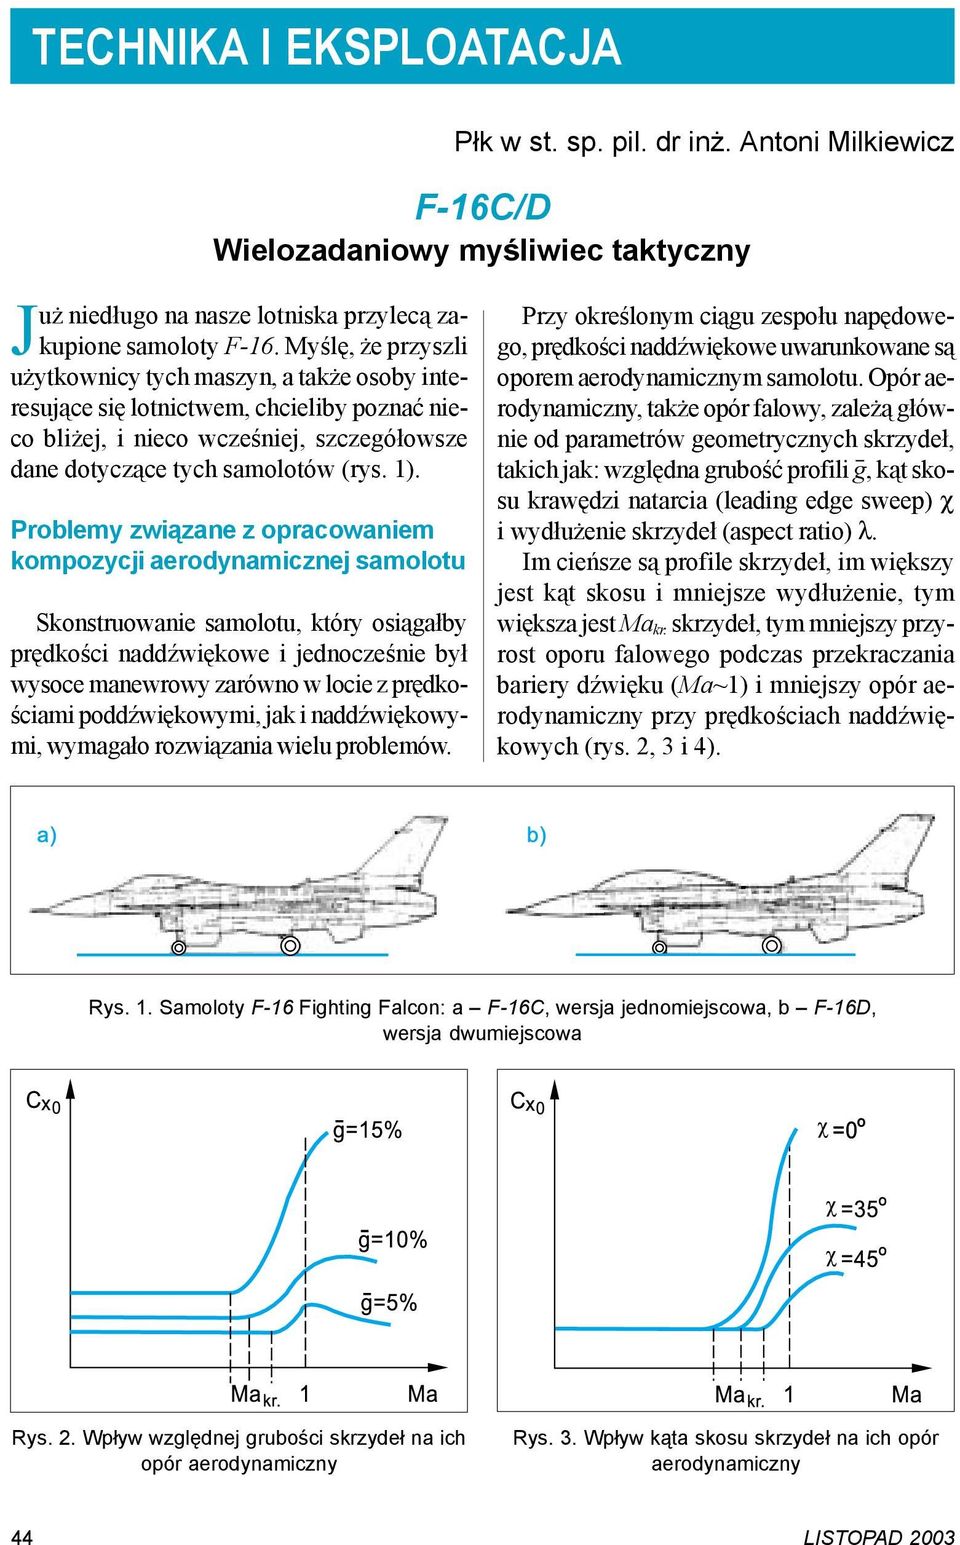 Problemy związane z opracowaniem kompozycji aerodynamicznej samolotu Skonstruowanie samolotu, który osiągałby prędkości naddźwiękowe i jednocześnie był wysoce manewrowy zarówno w locie z prędkościami